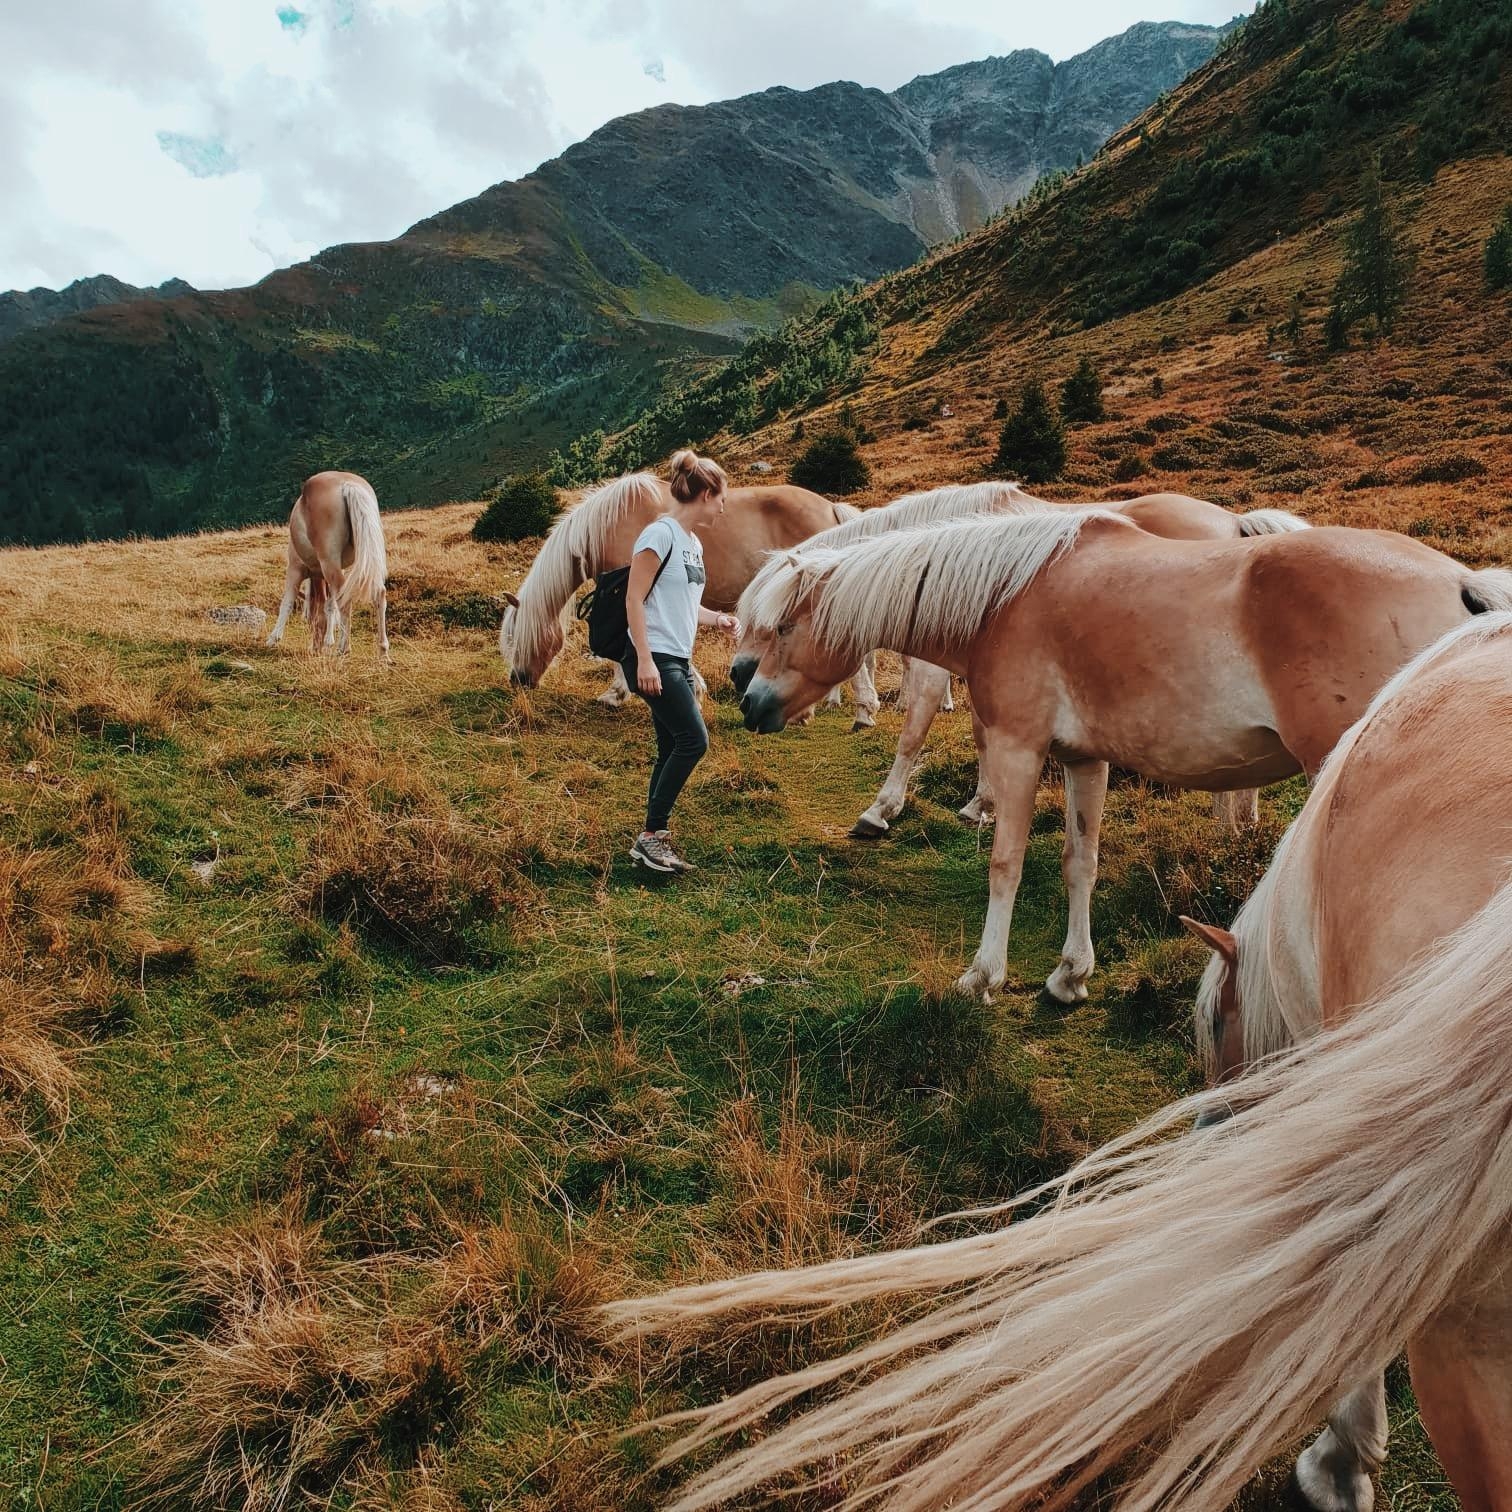 Wenn man bei einer Wanderung auf wilde Pferde trifft 💙
#wandern #travelchallenge